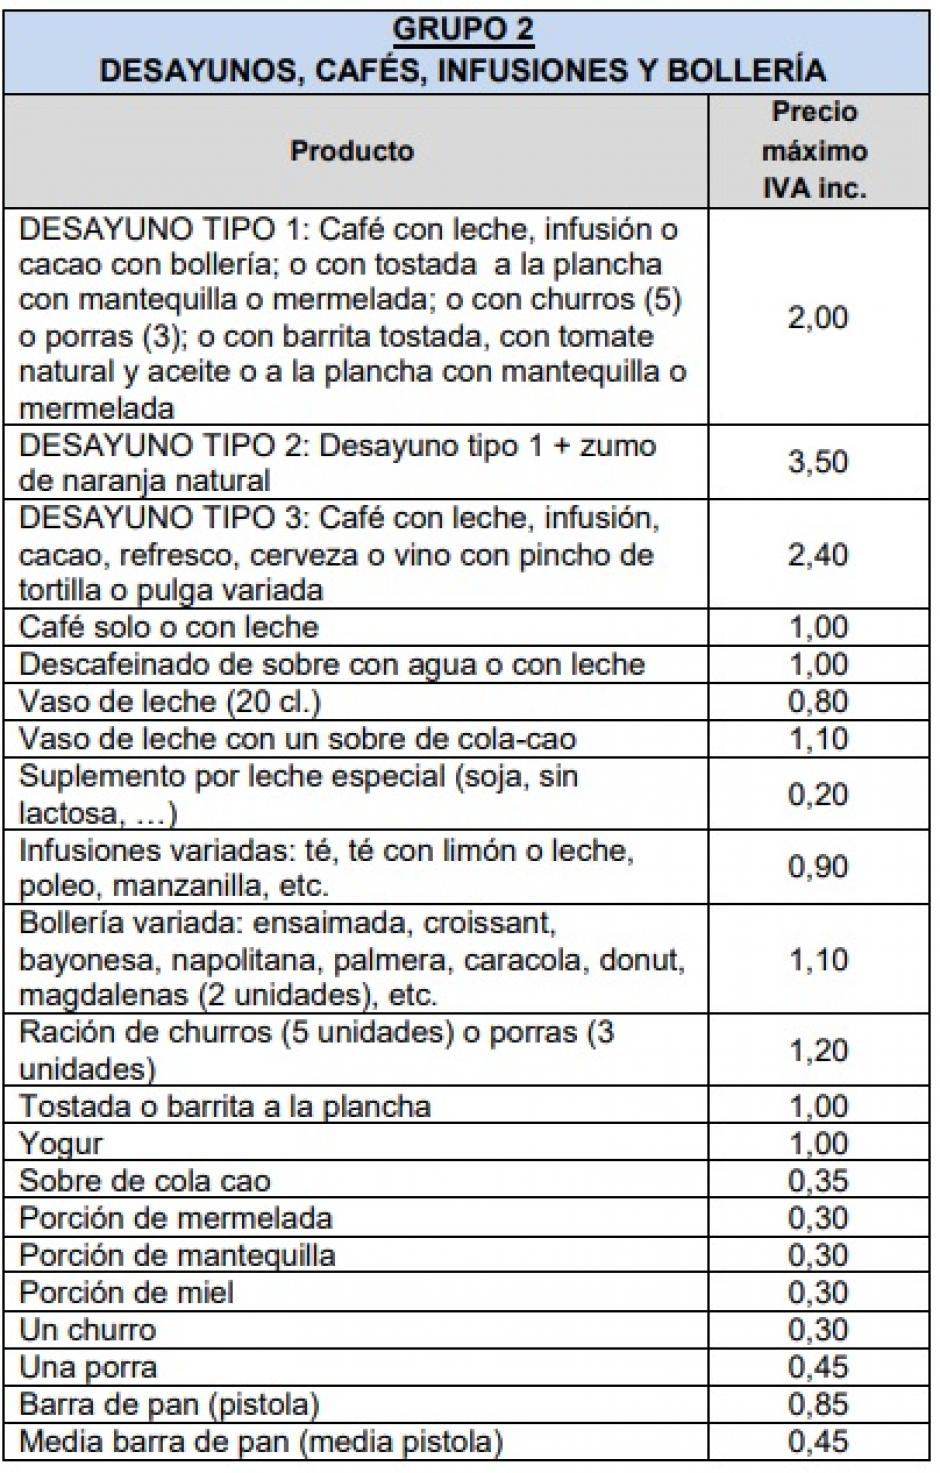 En La Moncloa se podrá desayunar por 2 euros